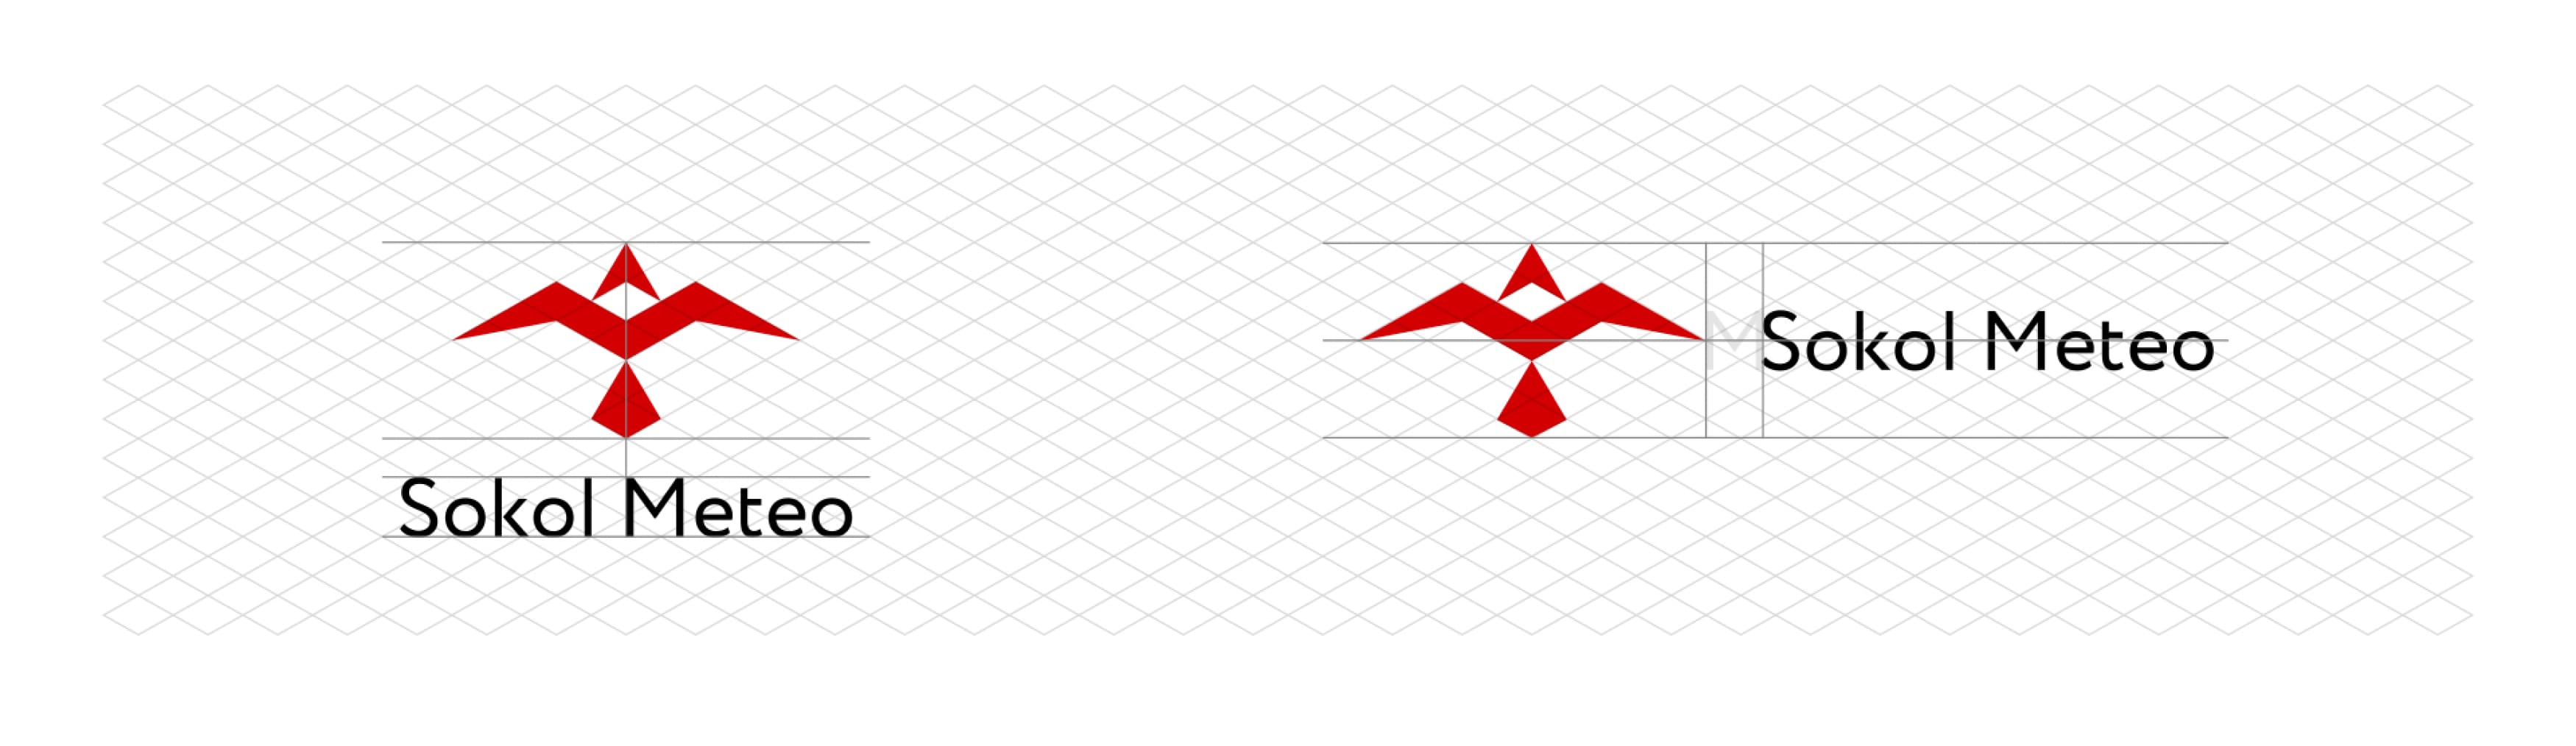 logo-contour